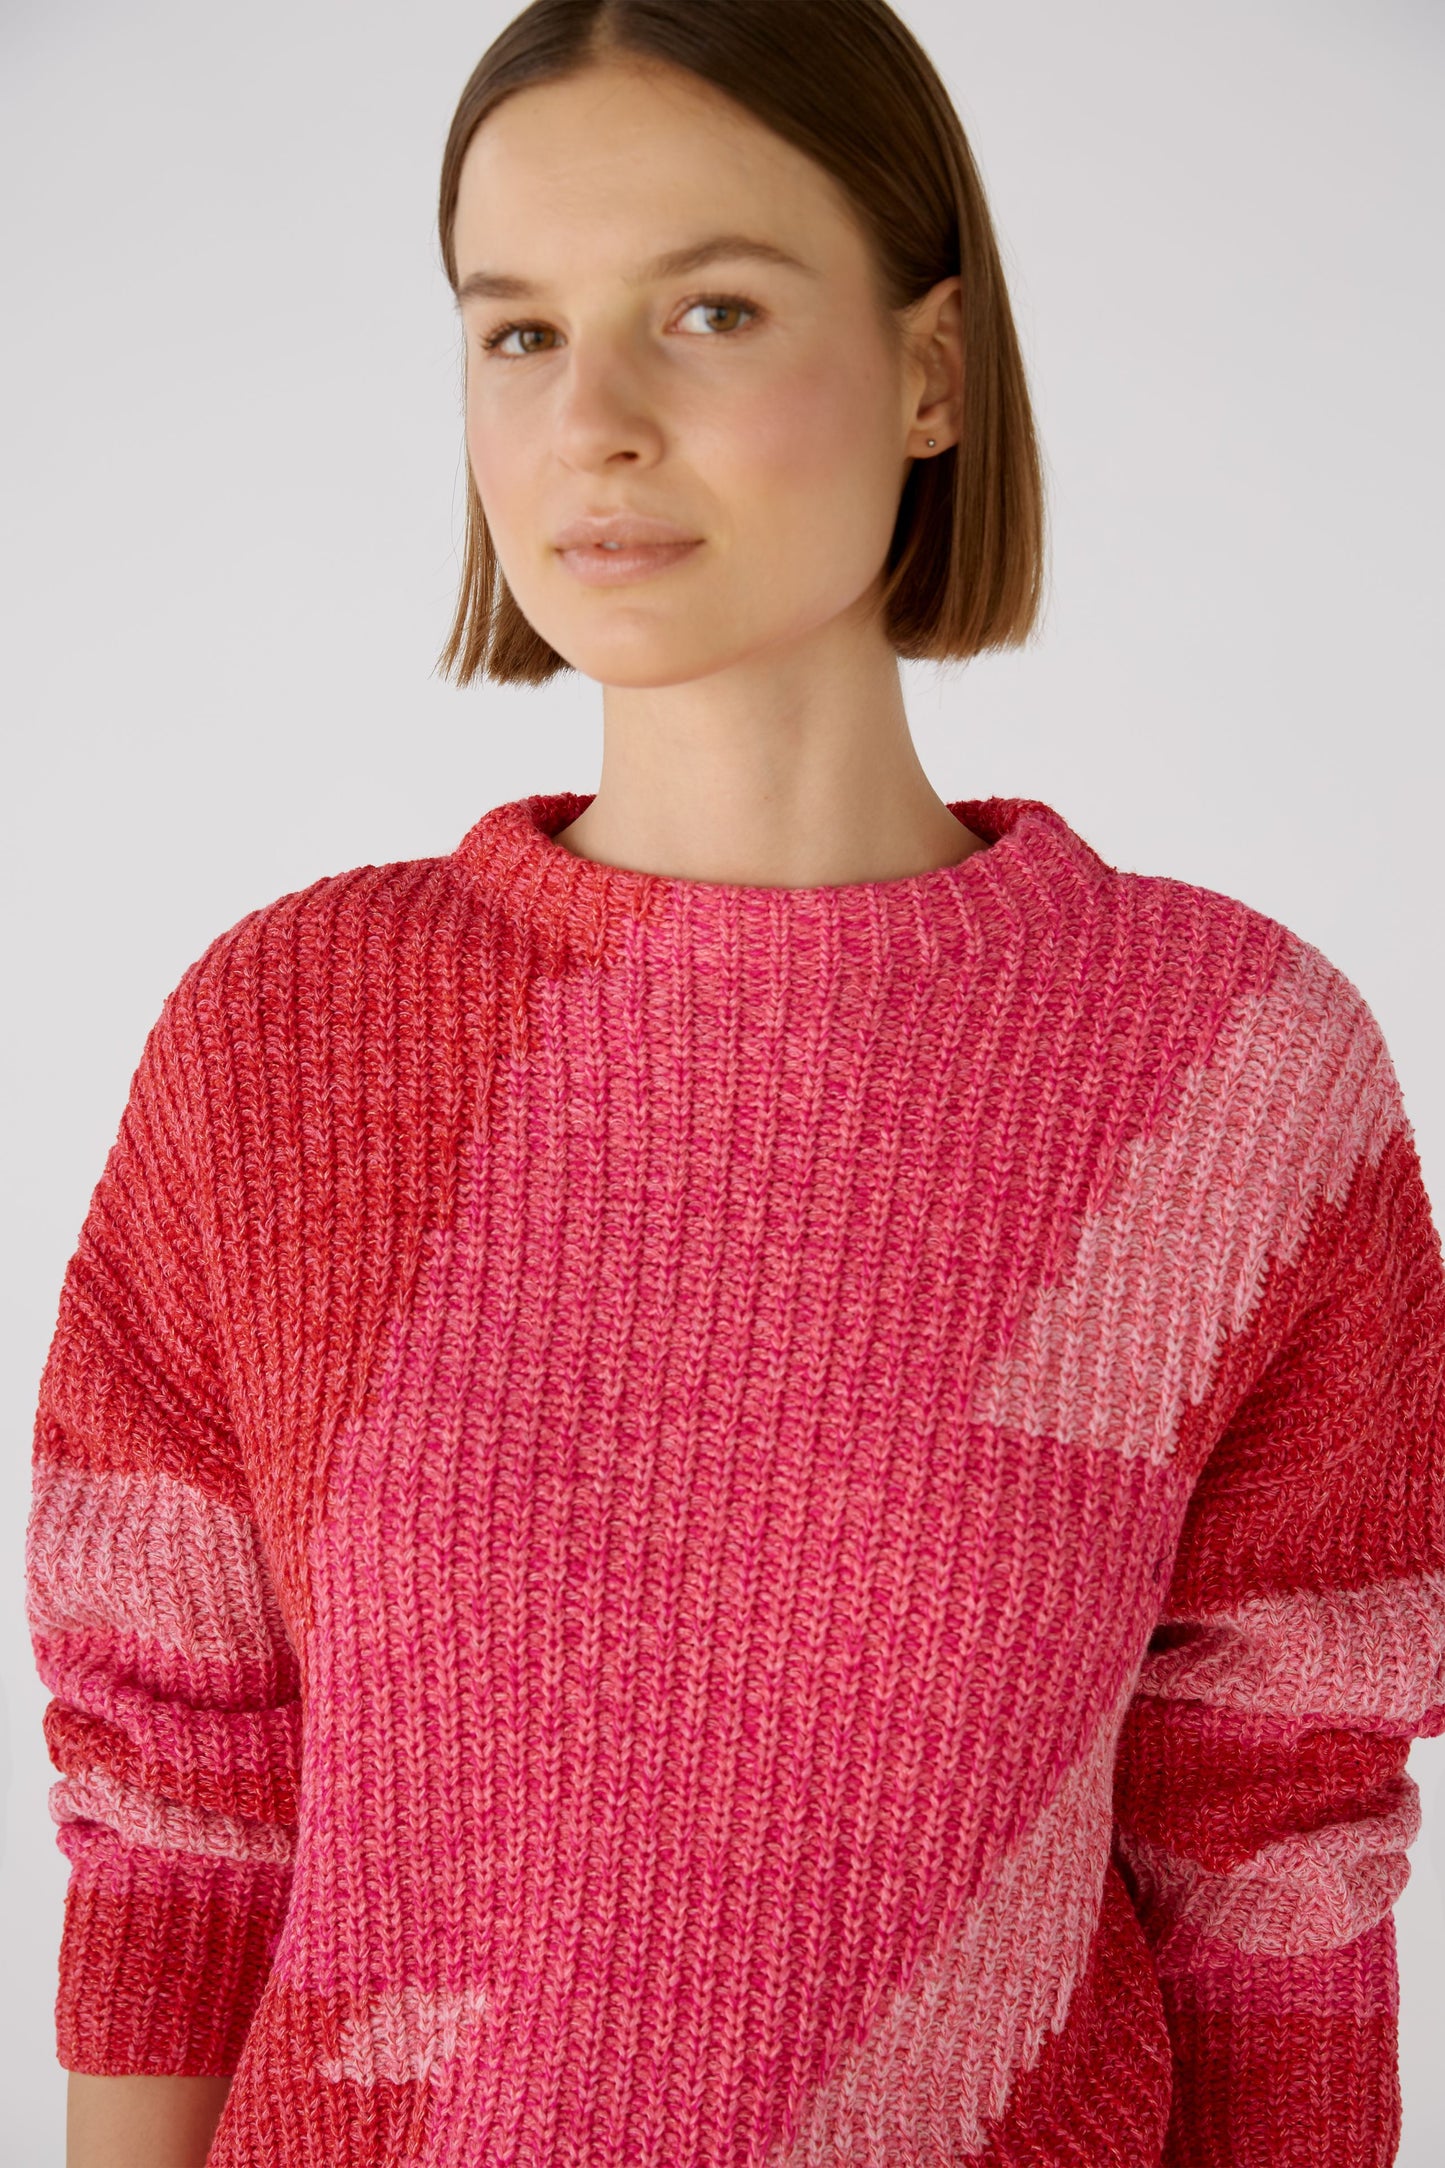 Pullover Baumwollmischung